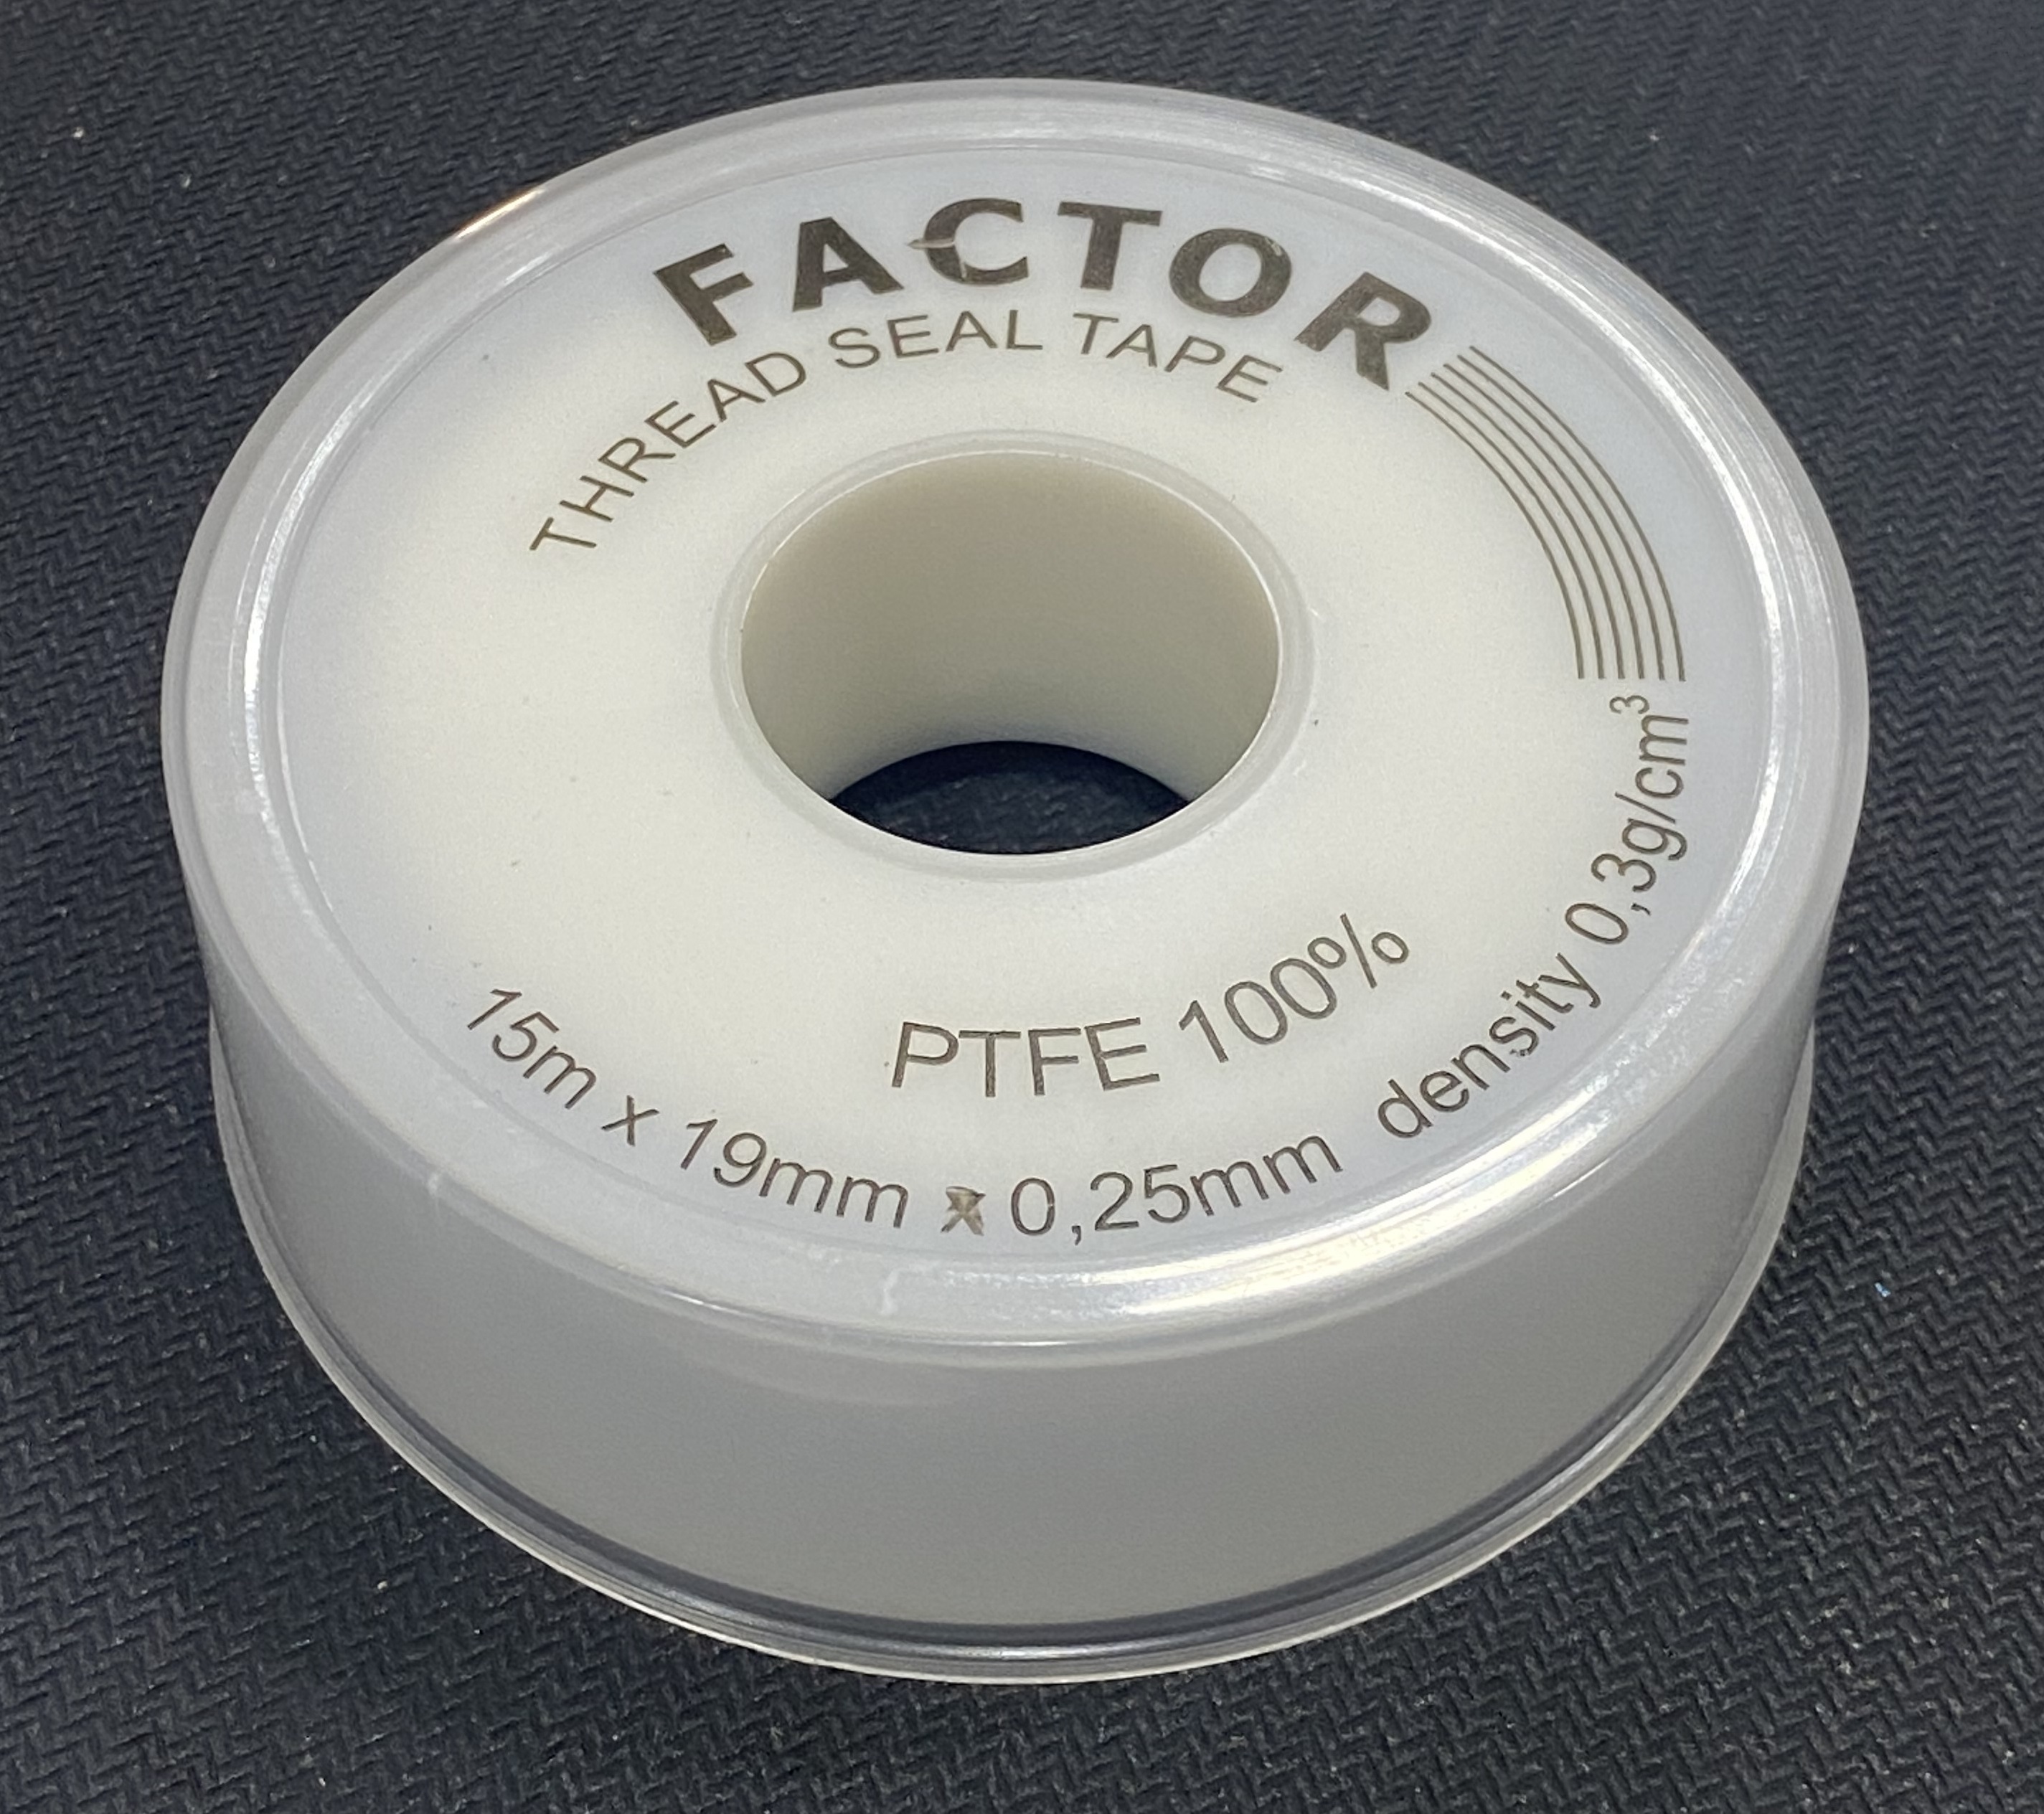 Teflon Seal Tape 15m x 19mm x 0.25mm 100% PTFE